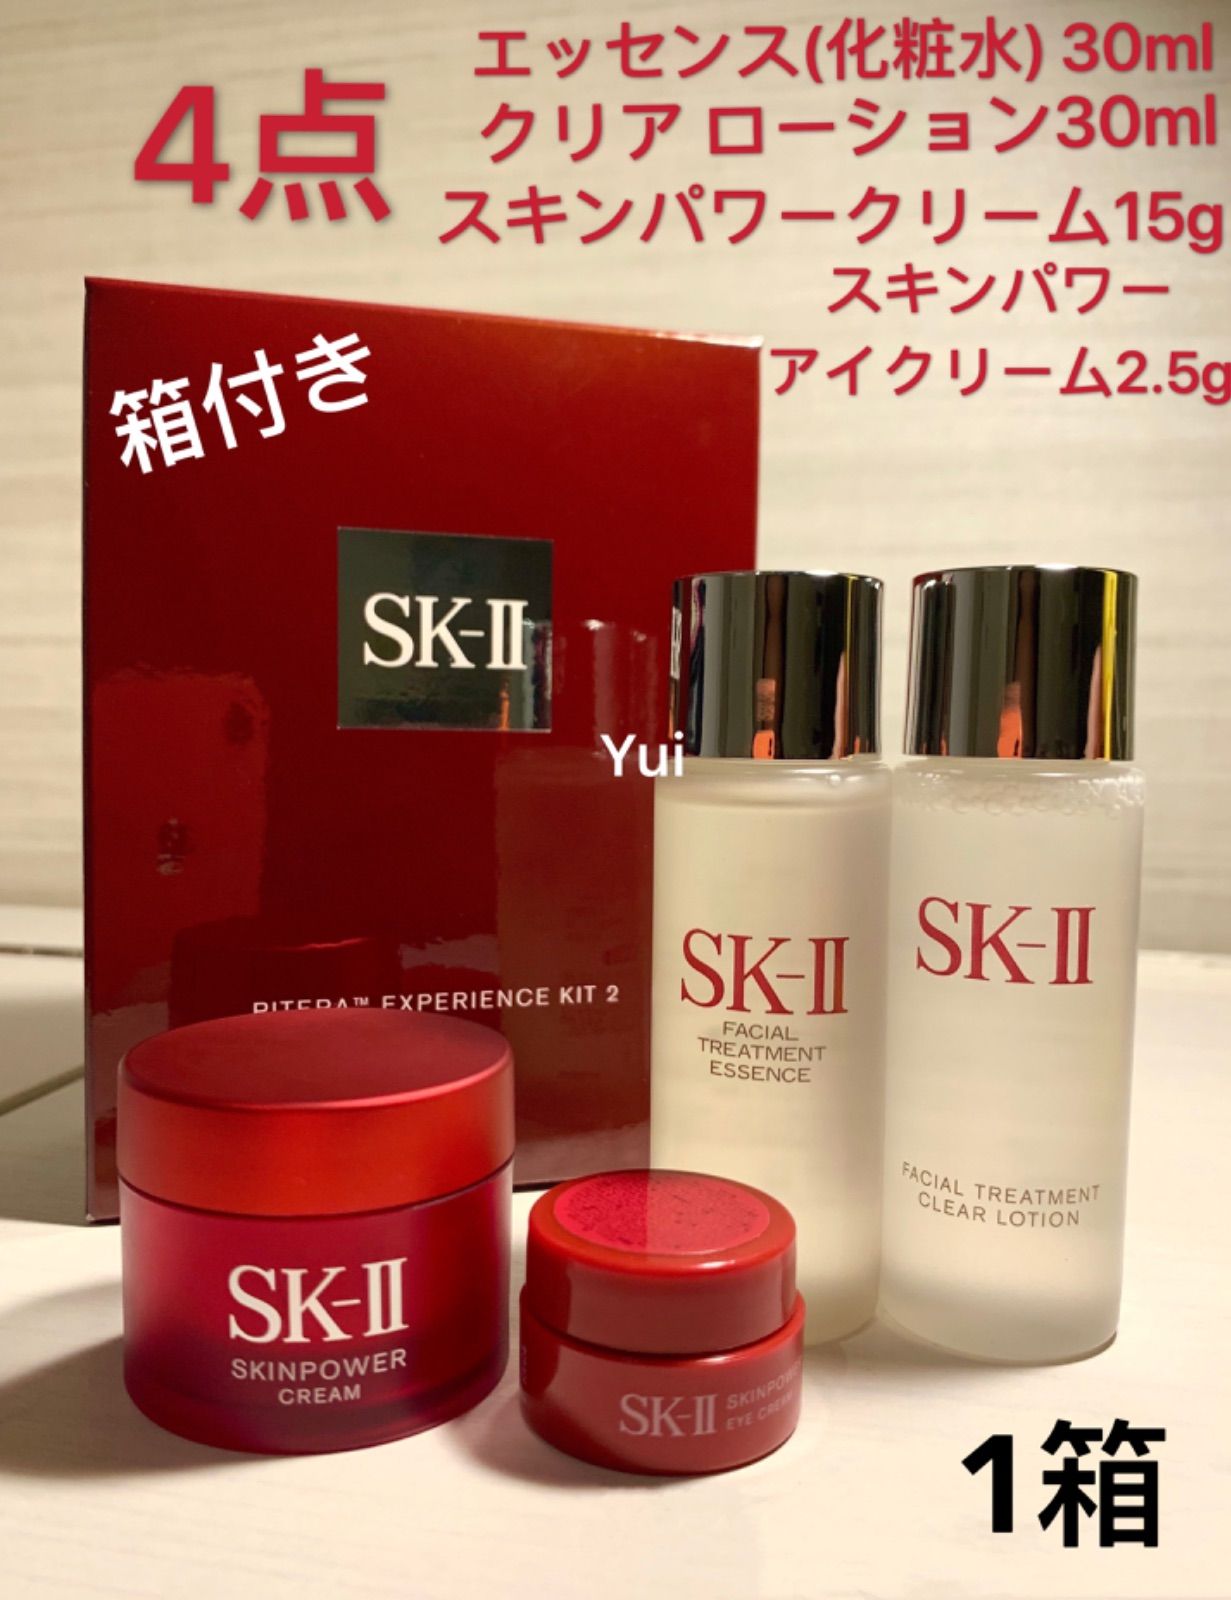 SK-II sk2 skii エスケーツースキンパワークリーム 化粧水 エクスペリエンス キット4点